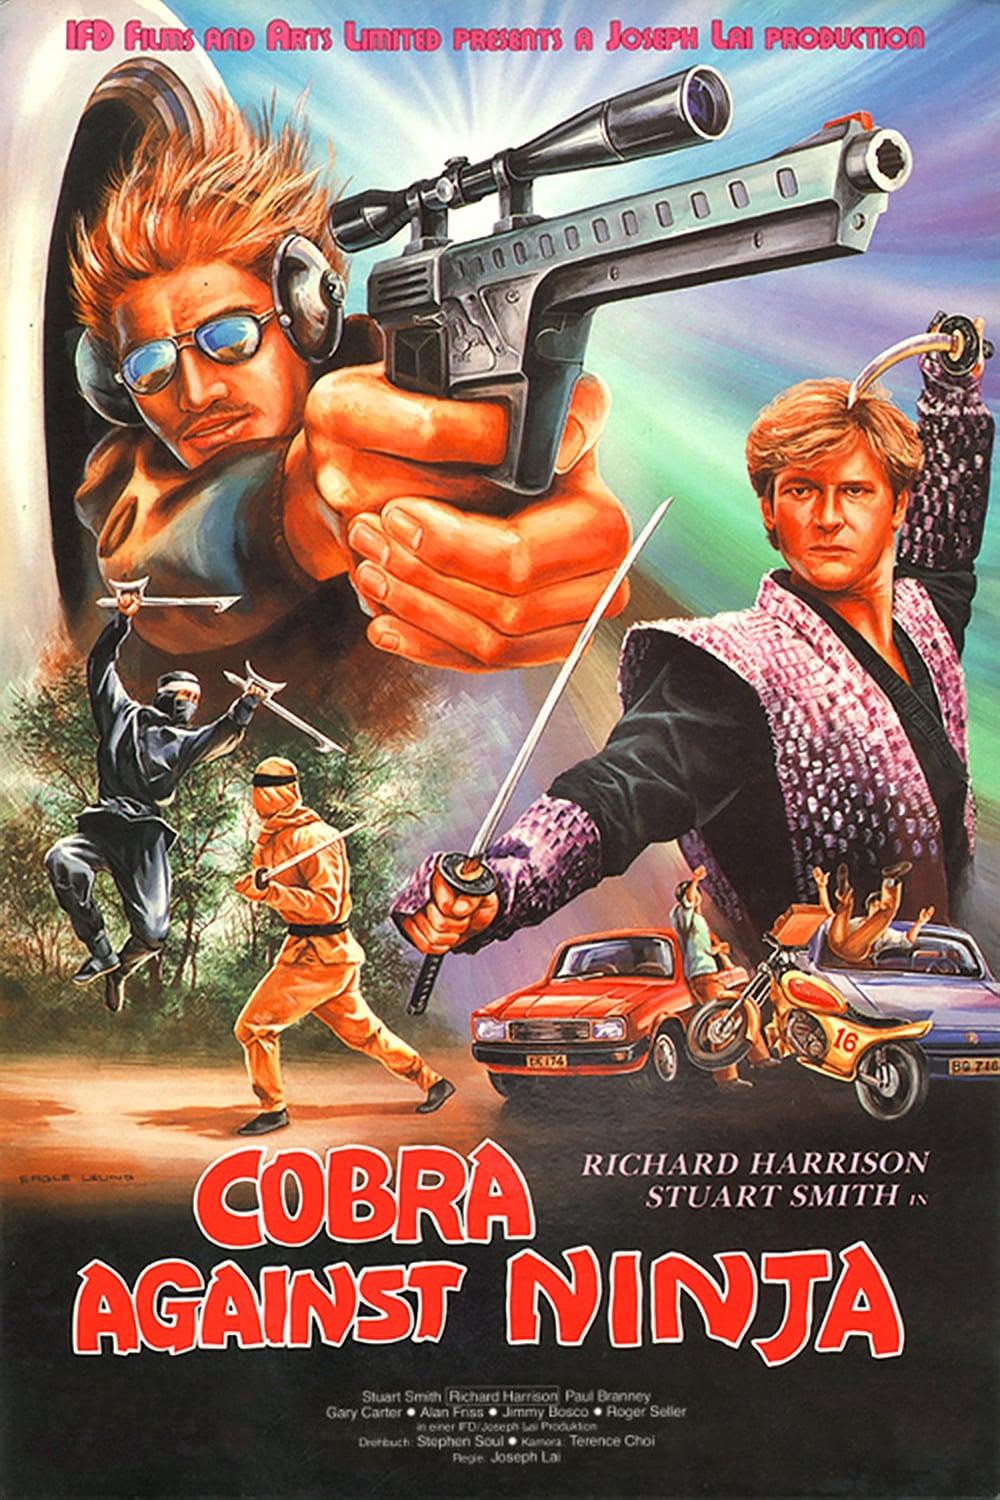 Cobra Against Ninja poster